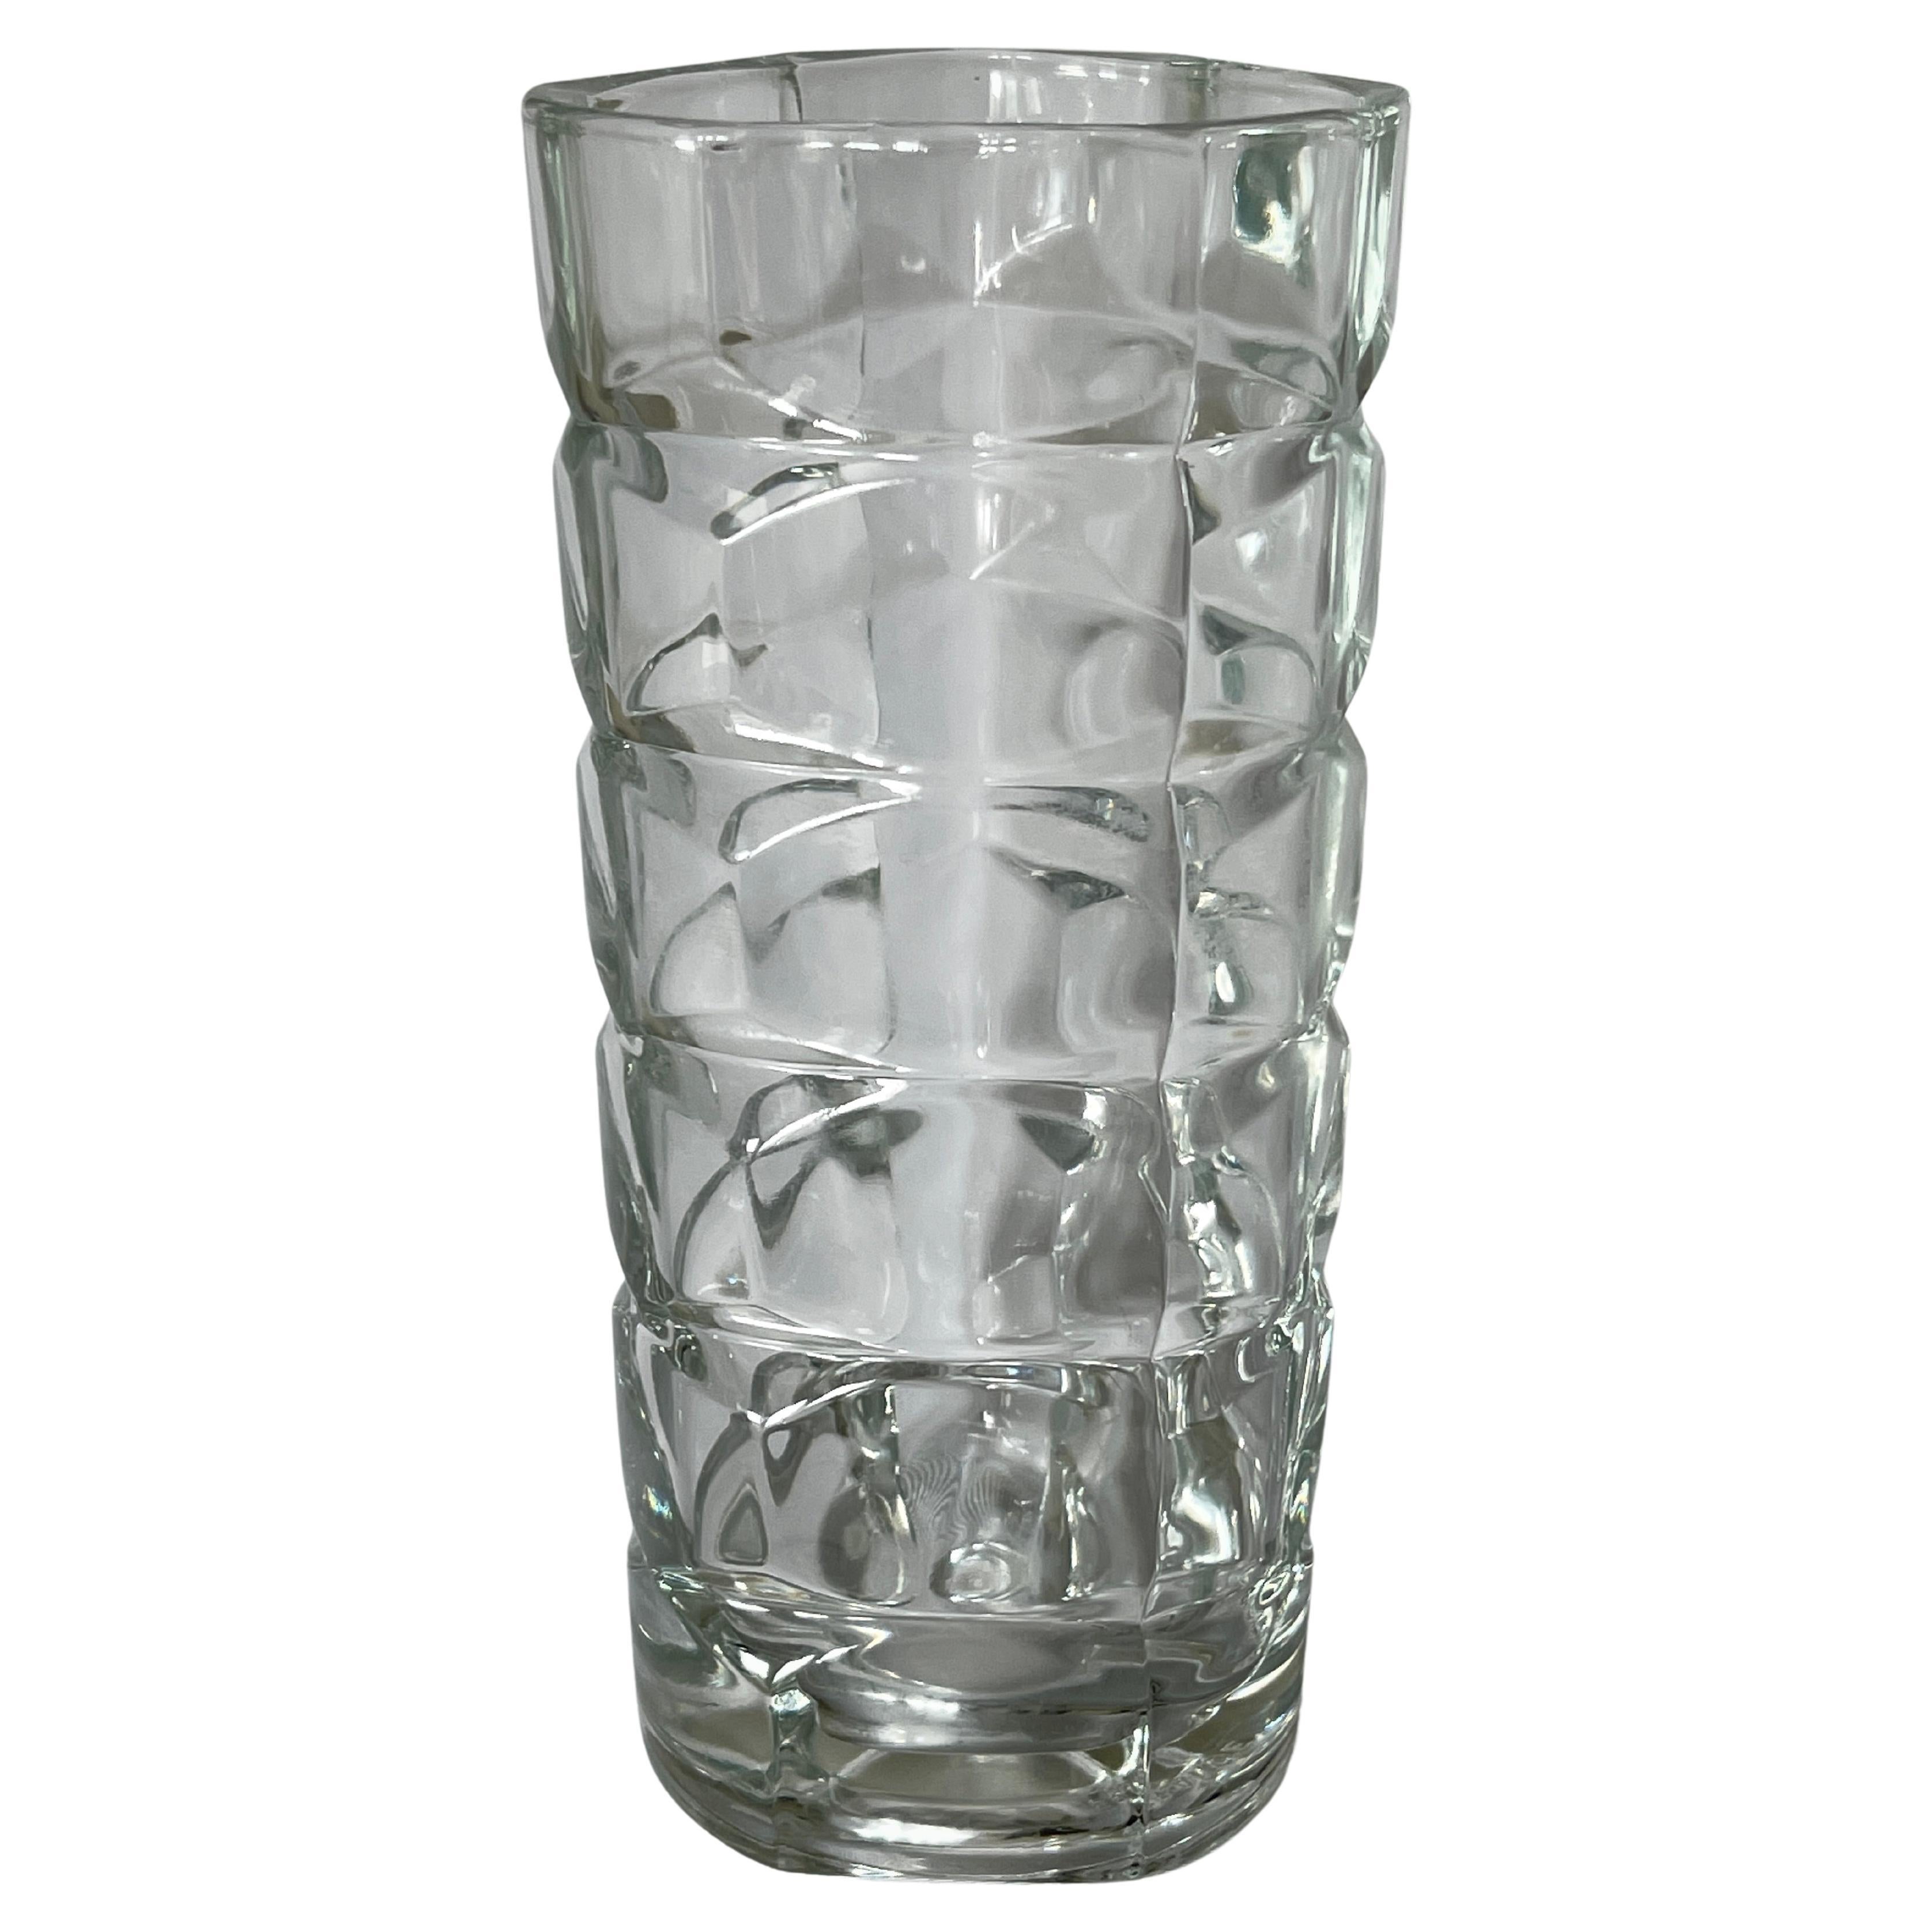 Vase en verre pressé transparent de conception géométrique française des années 1970